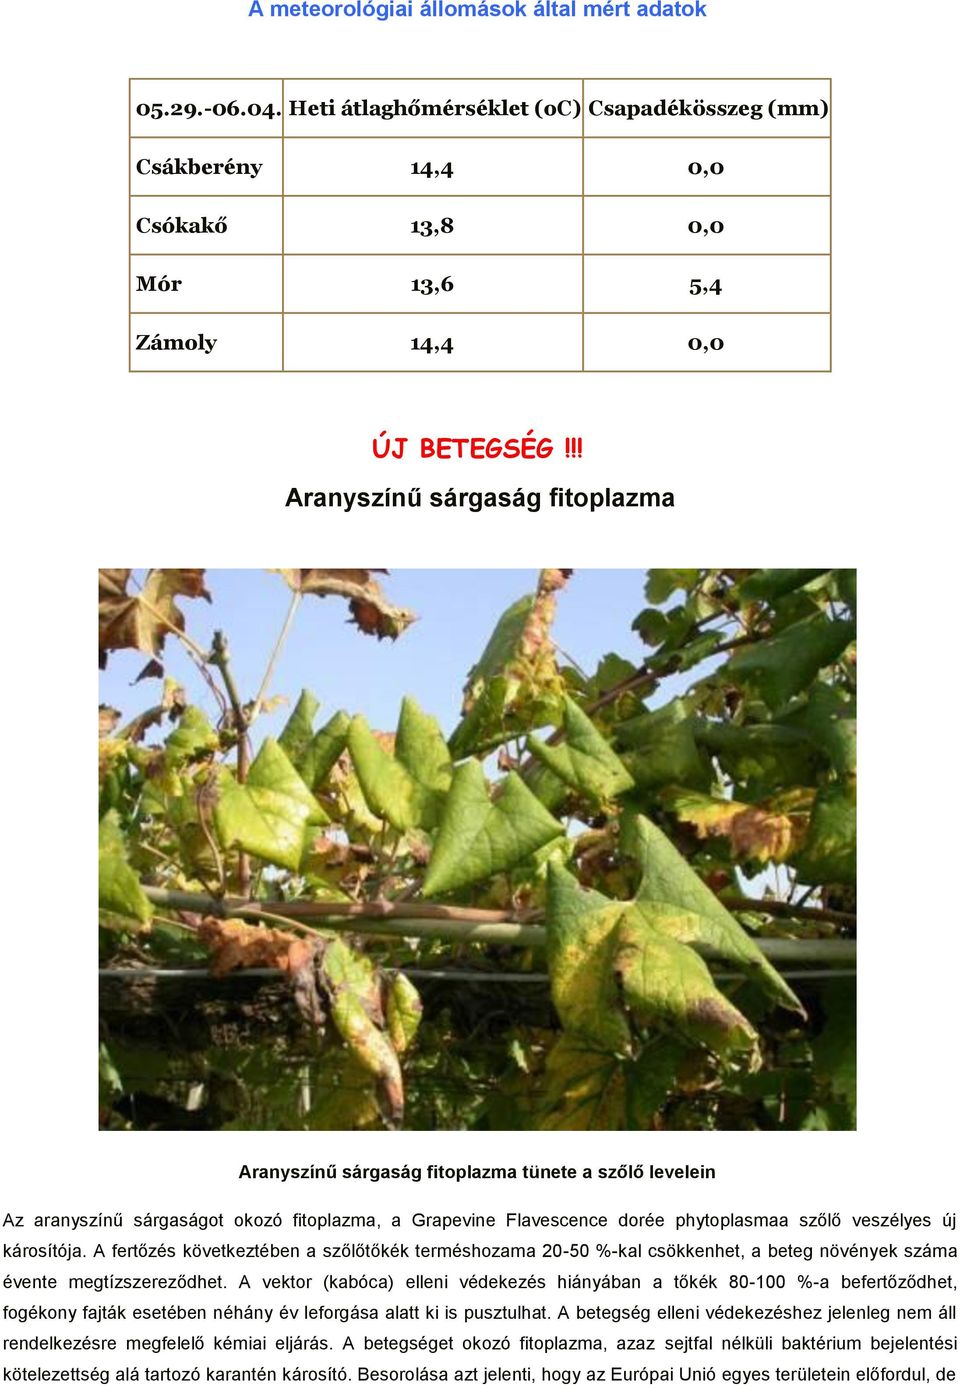 károsítója. A fertőzés következtében a szőlőtőkék terméshozama 20-50 %-kal csökkenhet, a beteg növények száma évente megtízszereződhet.